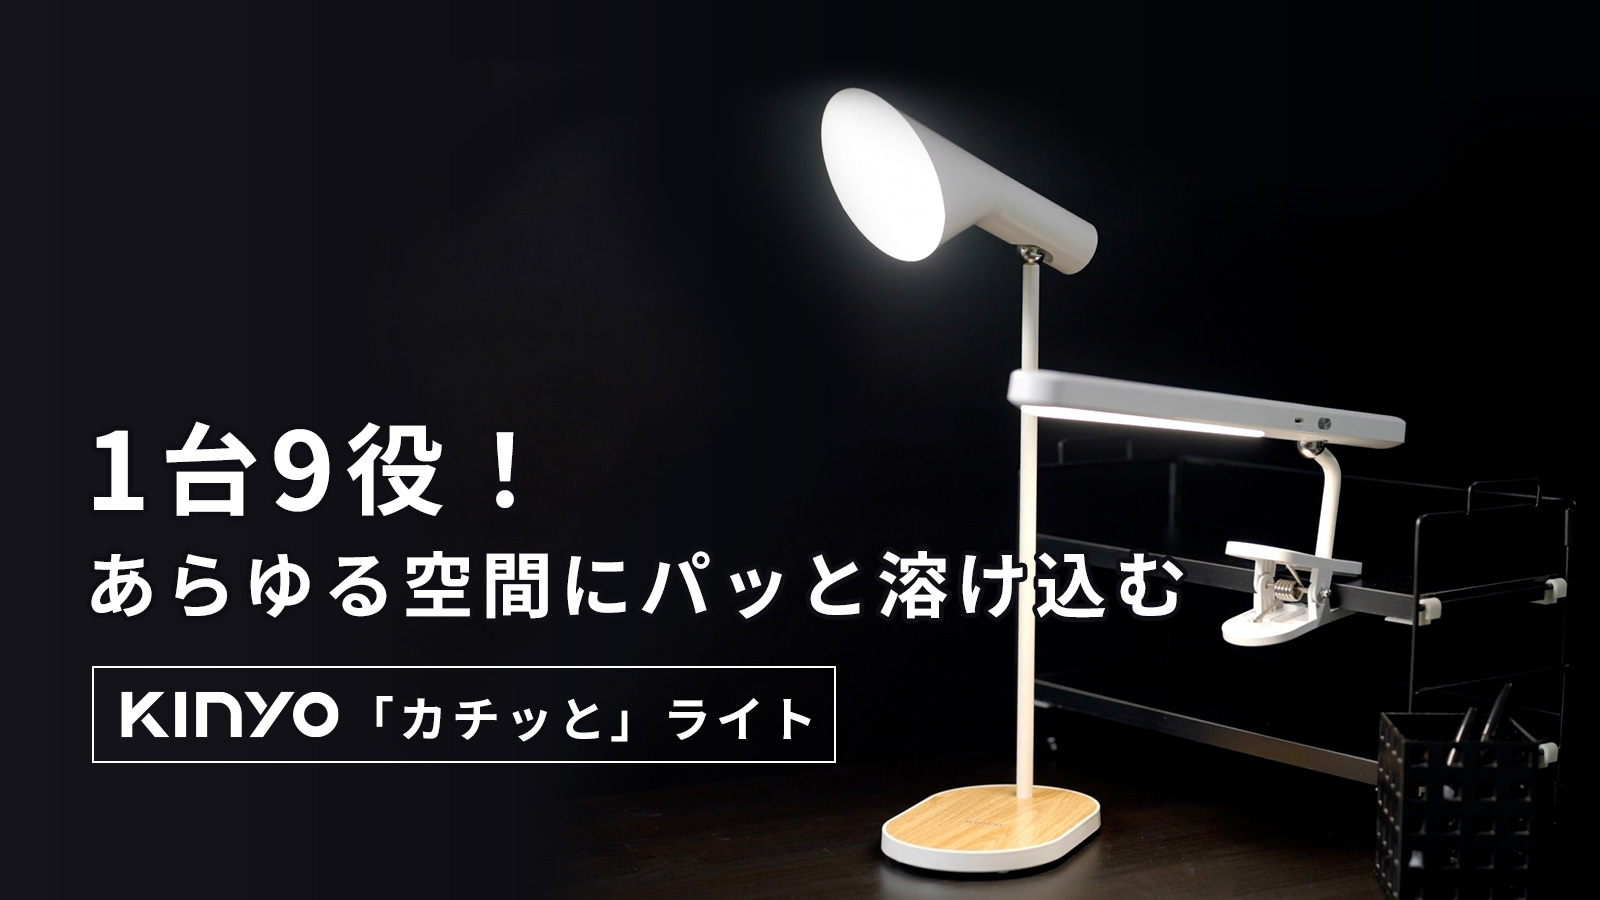 プロジェクト目標金額達成 一台で様々なライトに変身 一瞬で空間に溶け込む照明 Kinyo カチッと ライト Uniicreative Co Ltd のプレスリリース